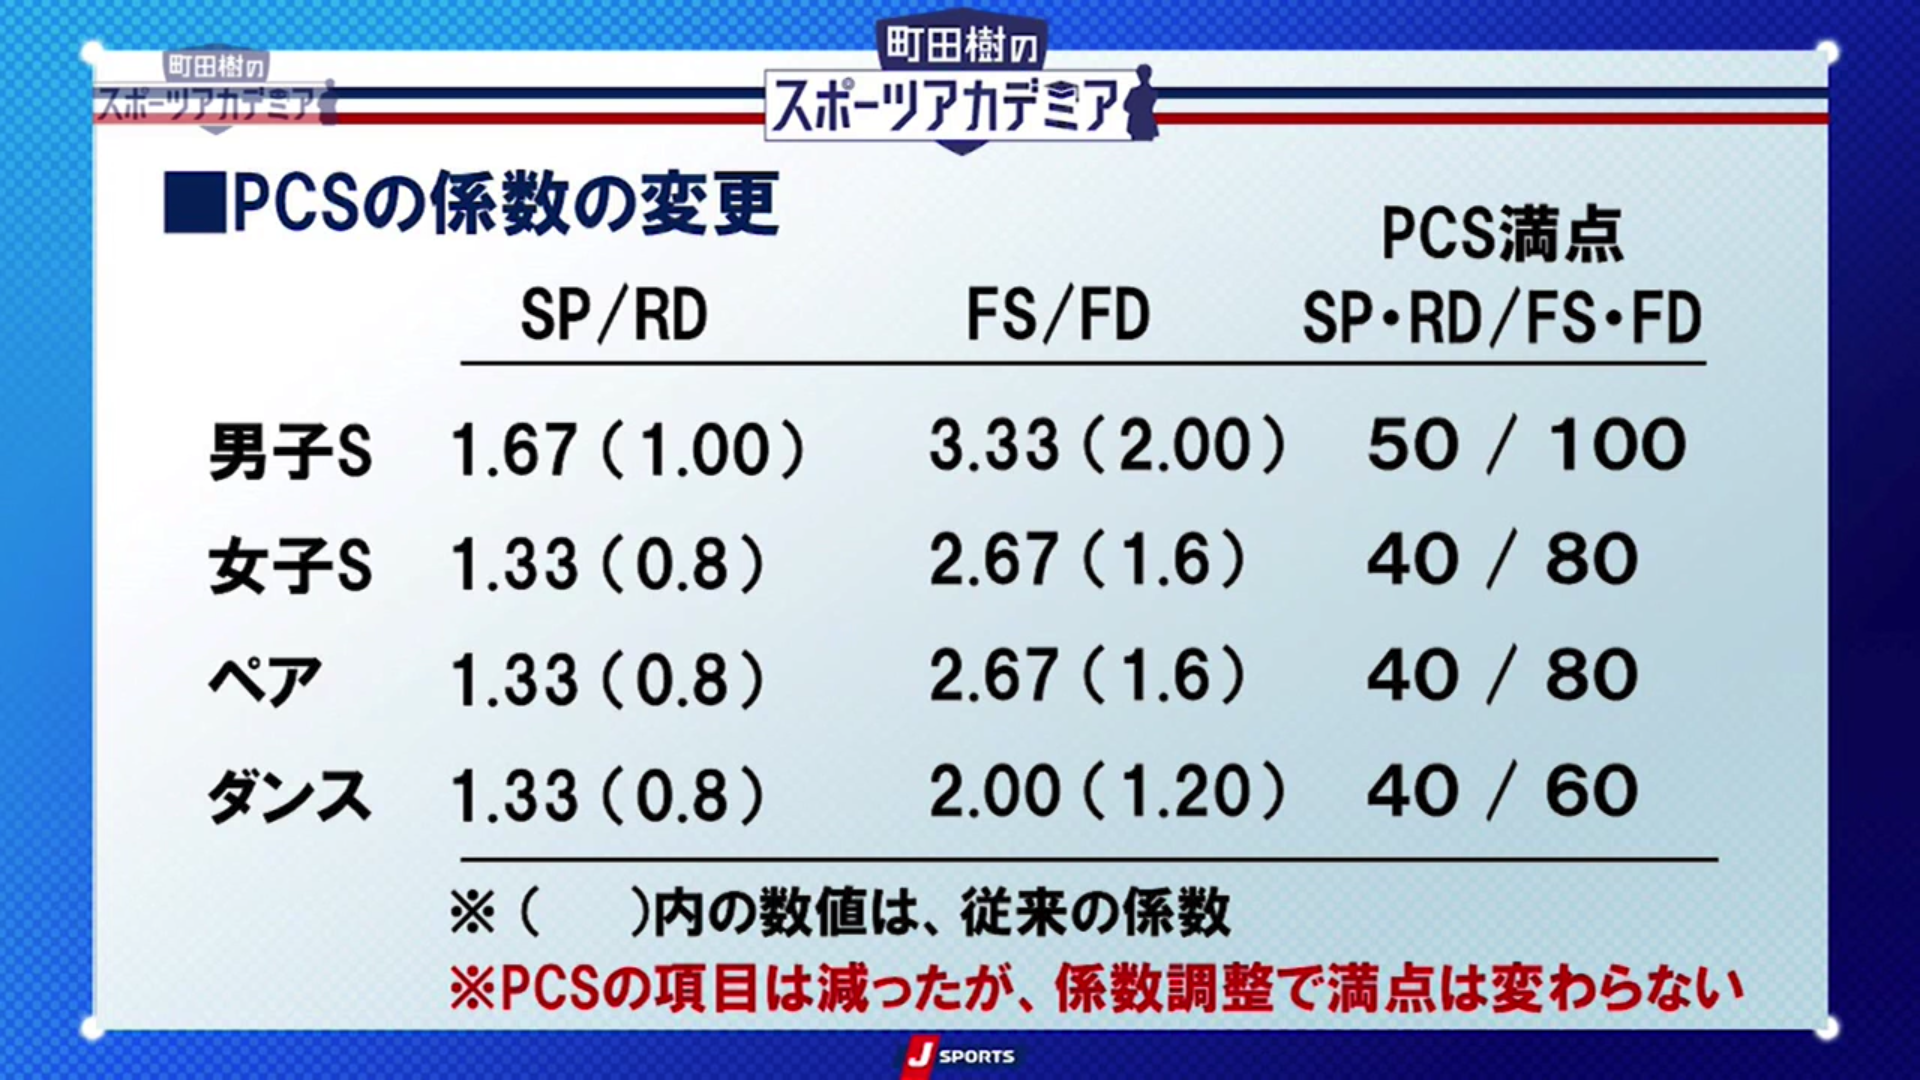 PSCの係数の変更